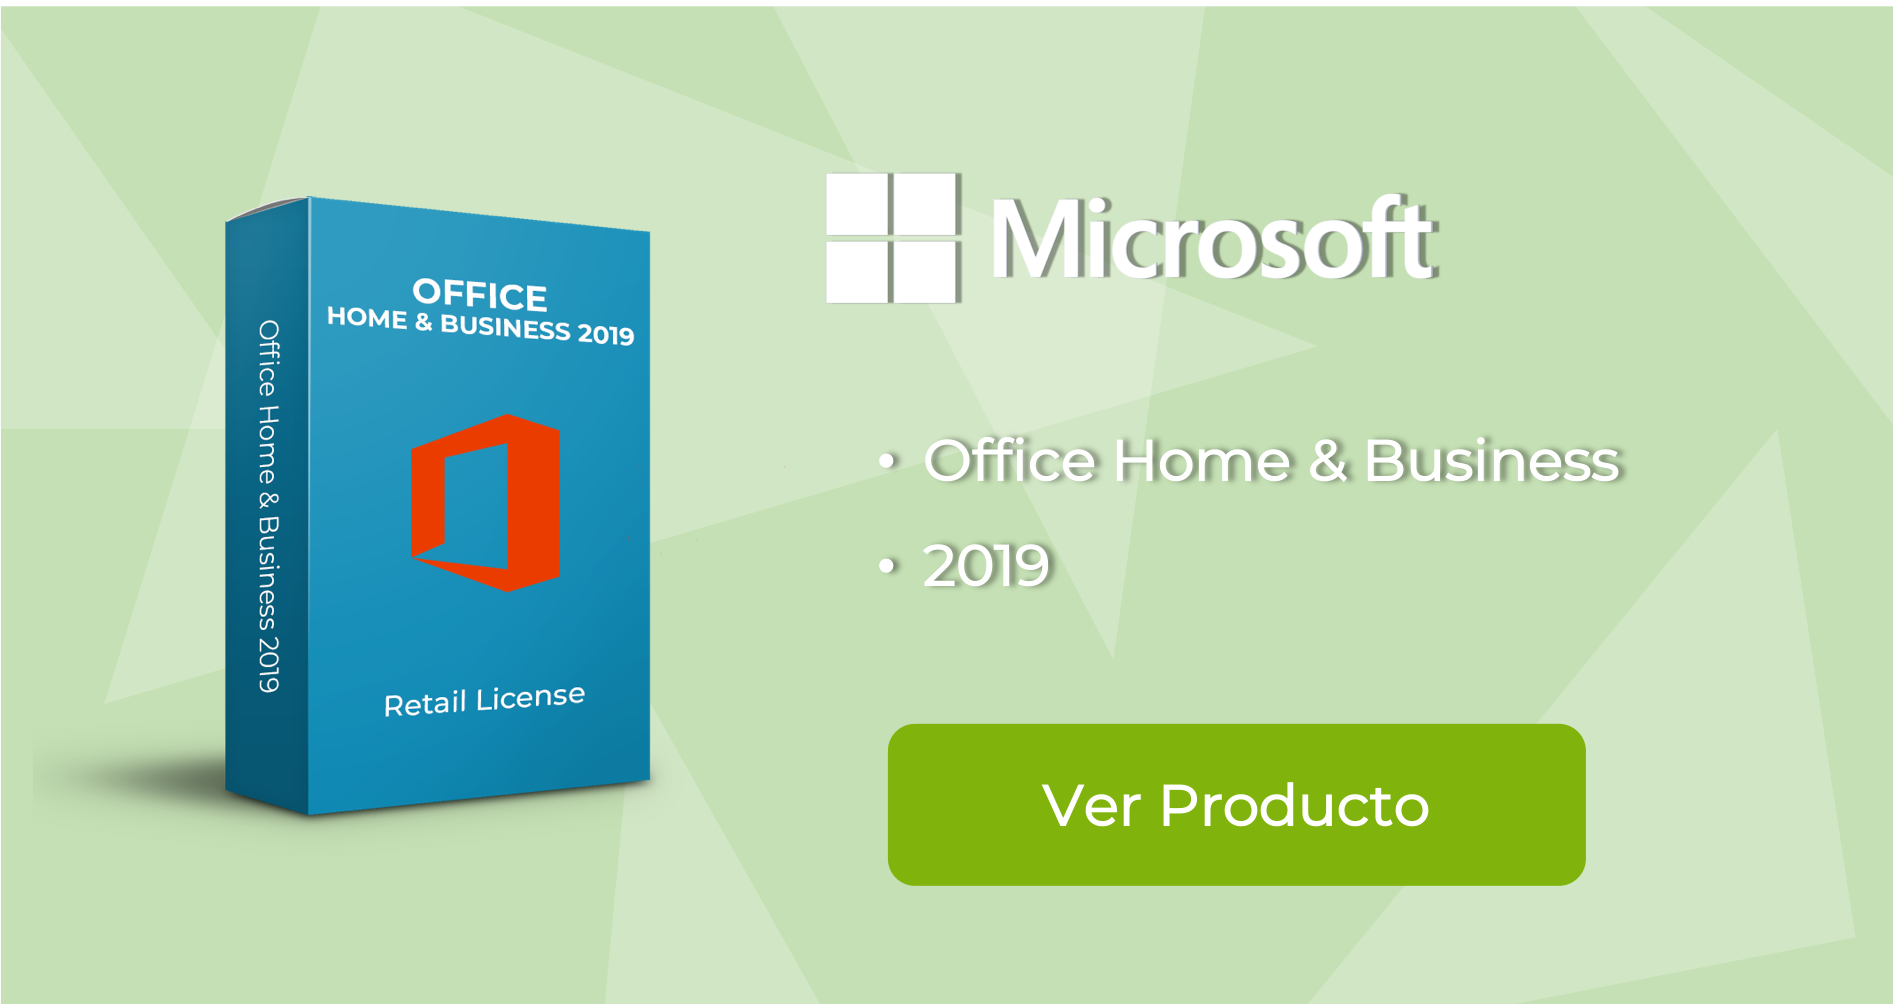 Como obtener licencia de Office gratis? - Directo Software | Software punto  de venta